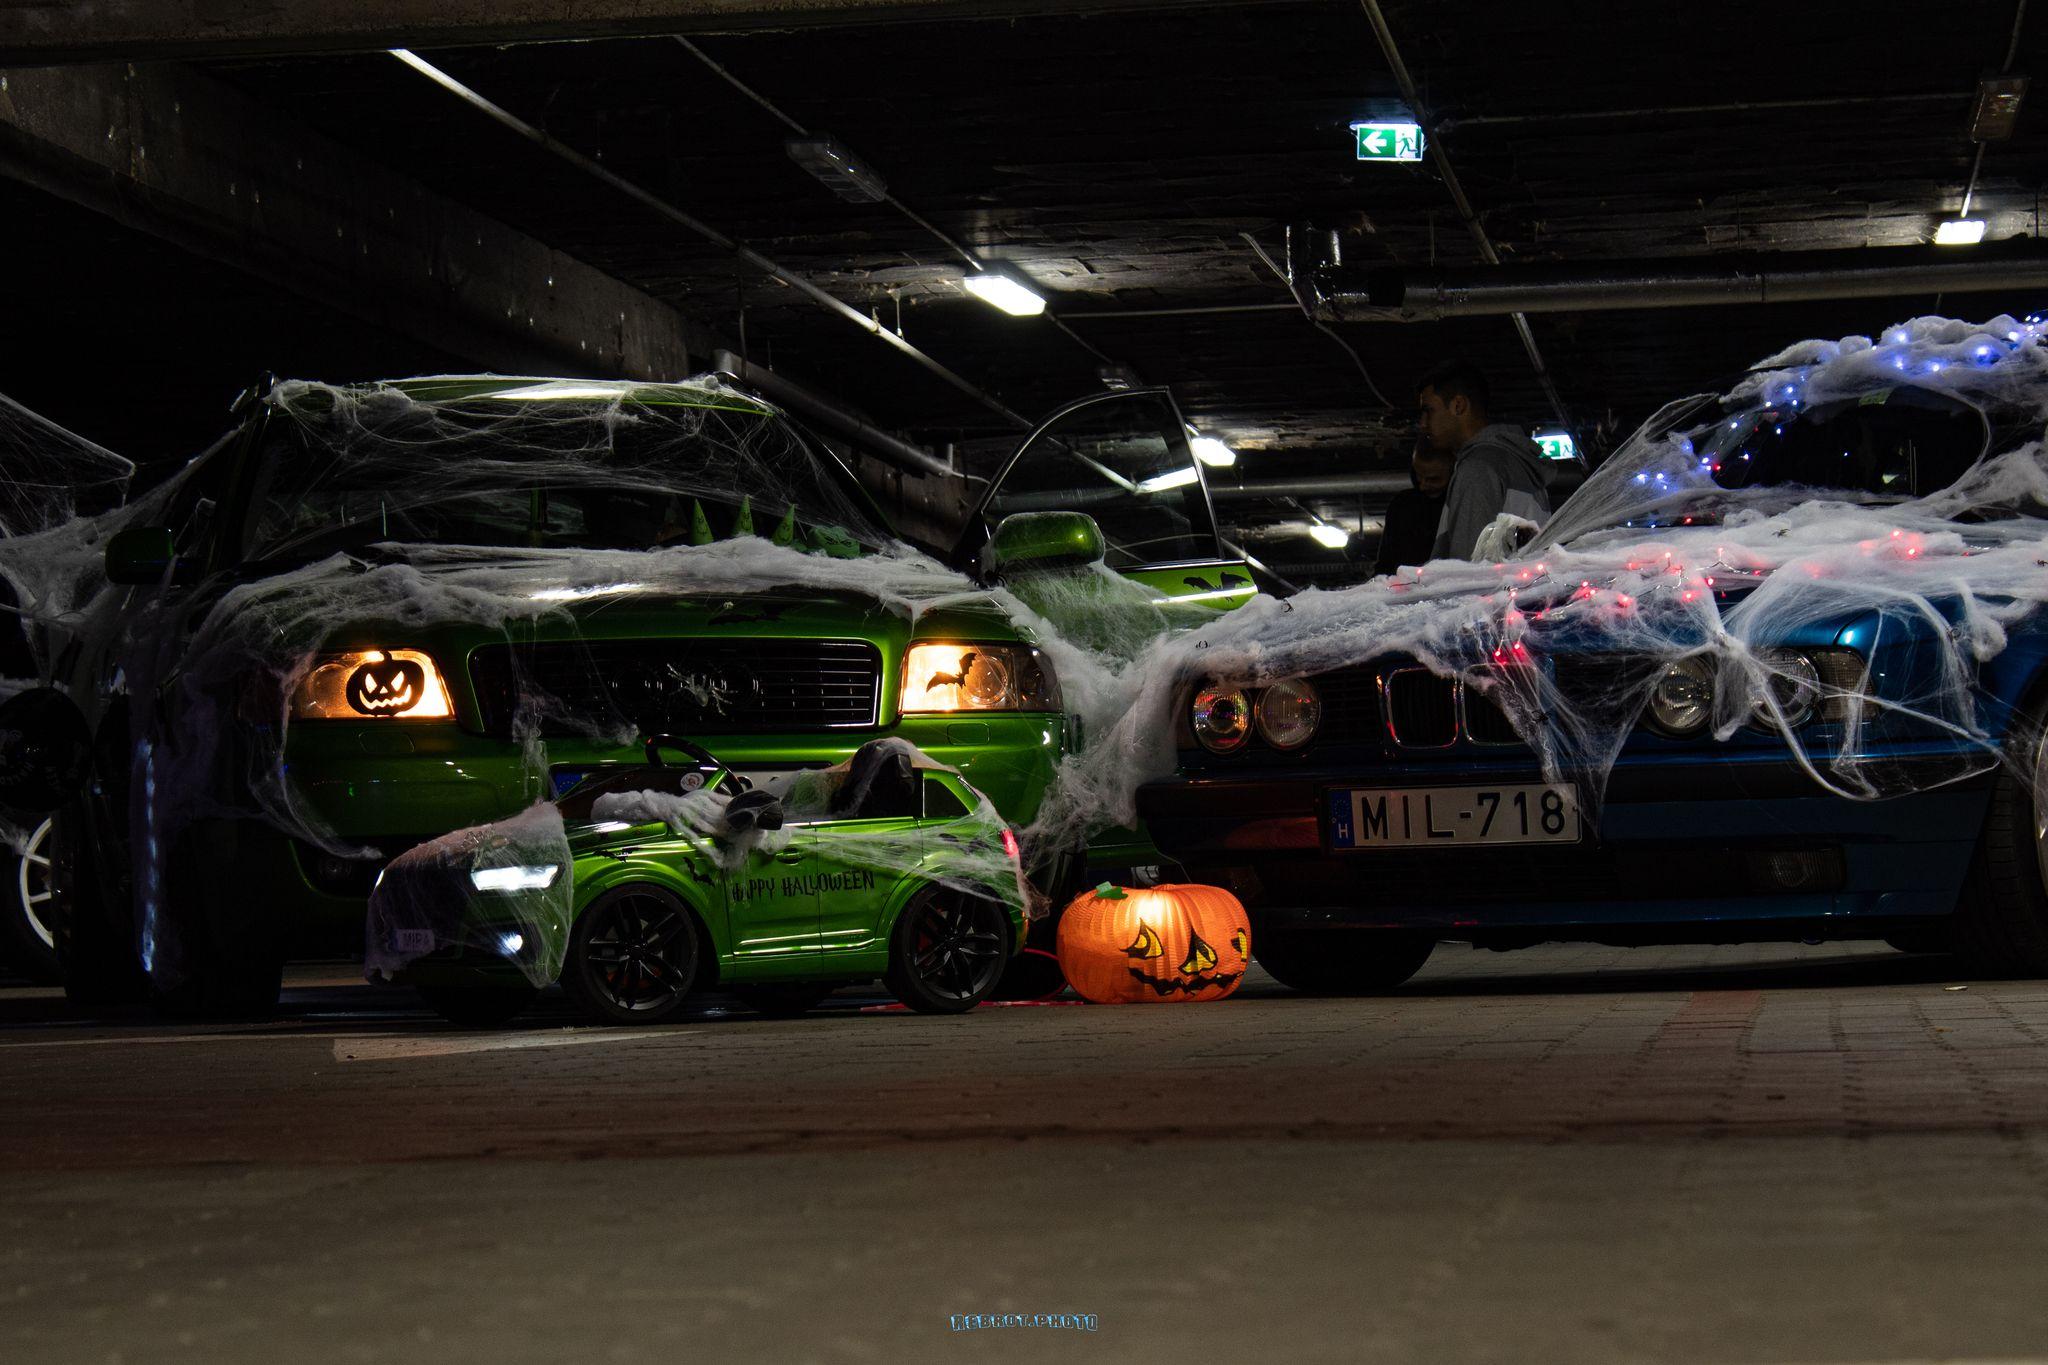 Halloweeni autós találkozót rendeztek a Savoya mélygarázsában